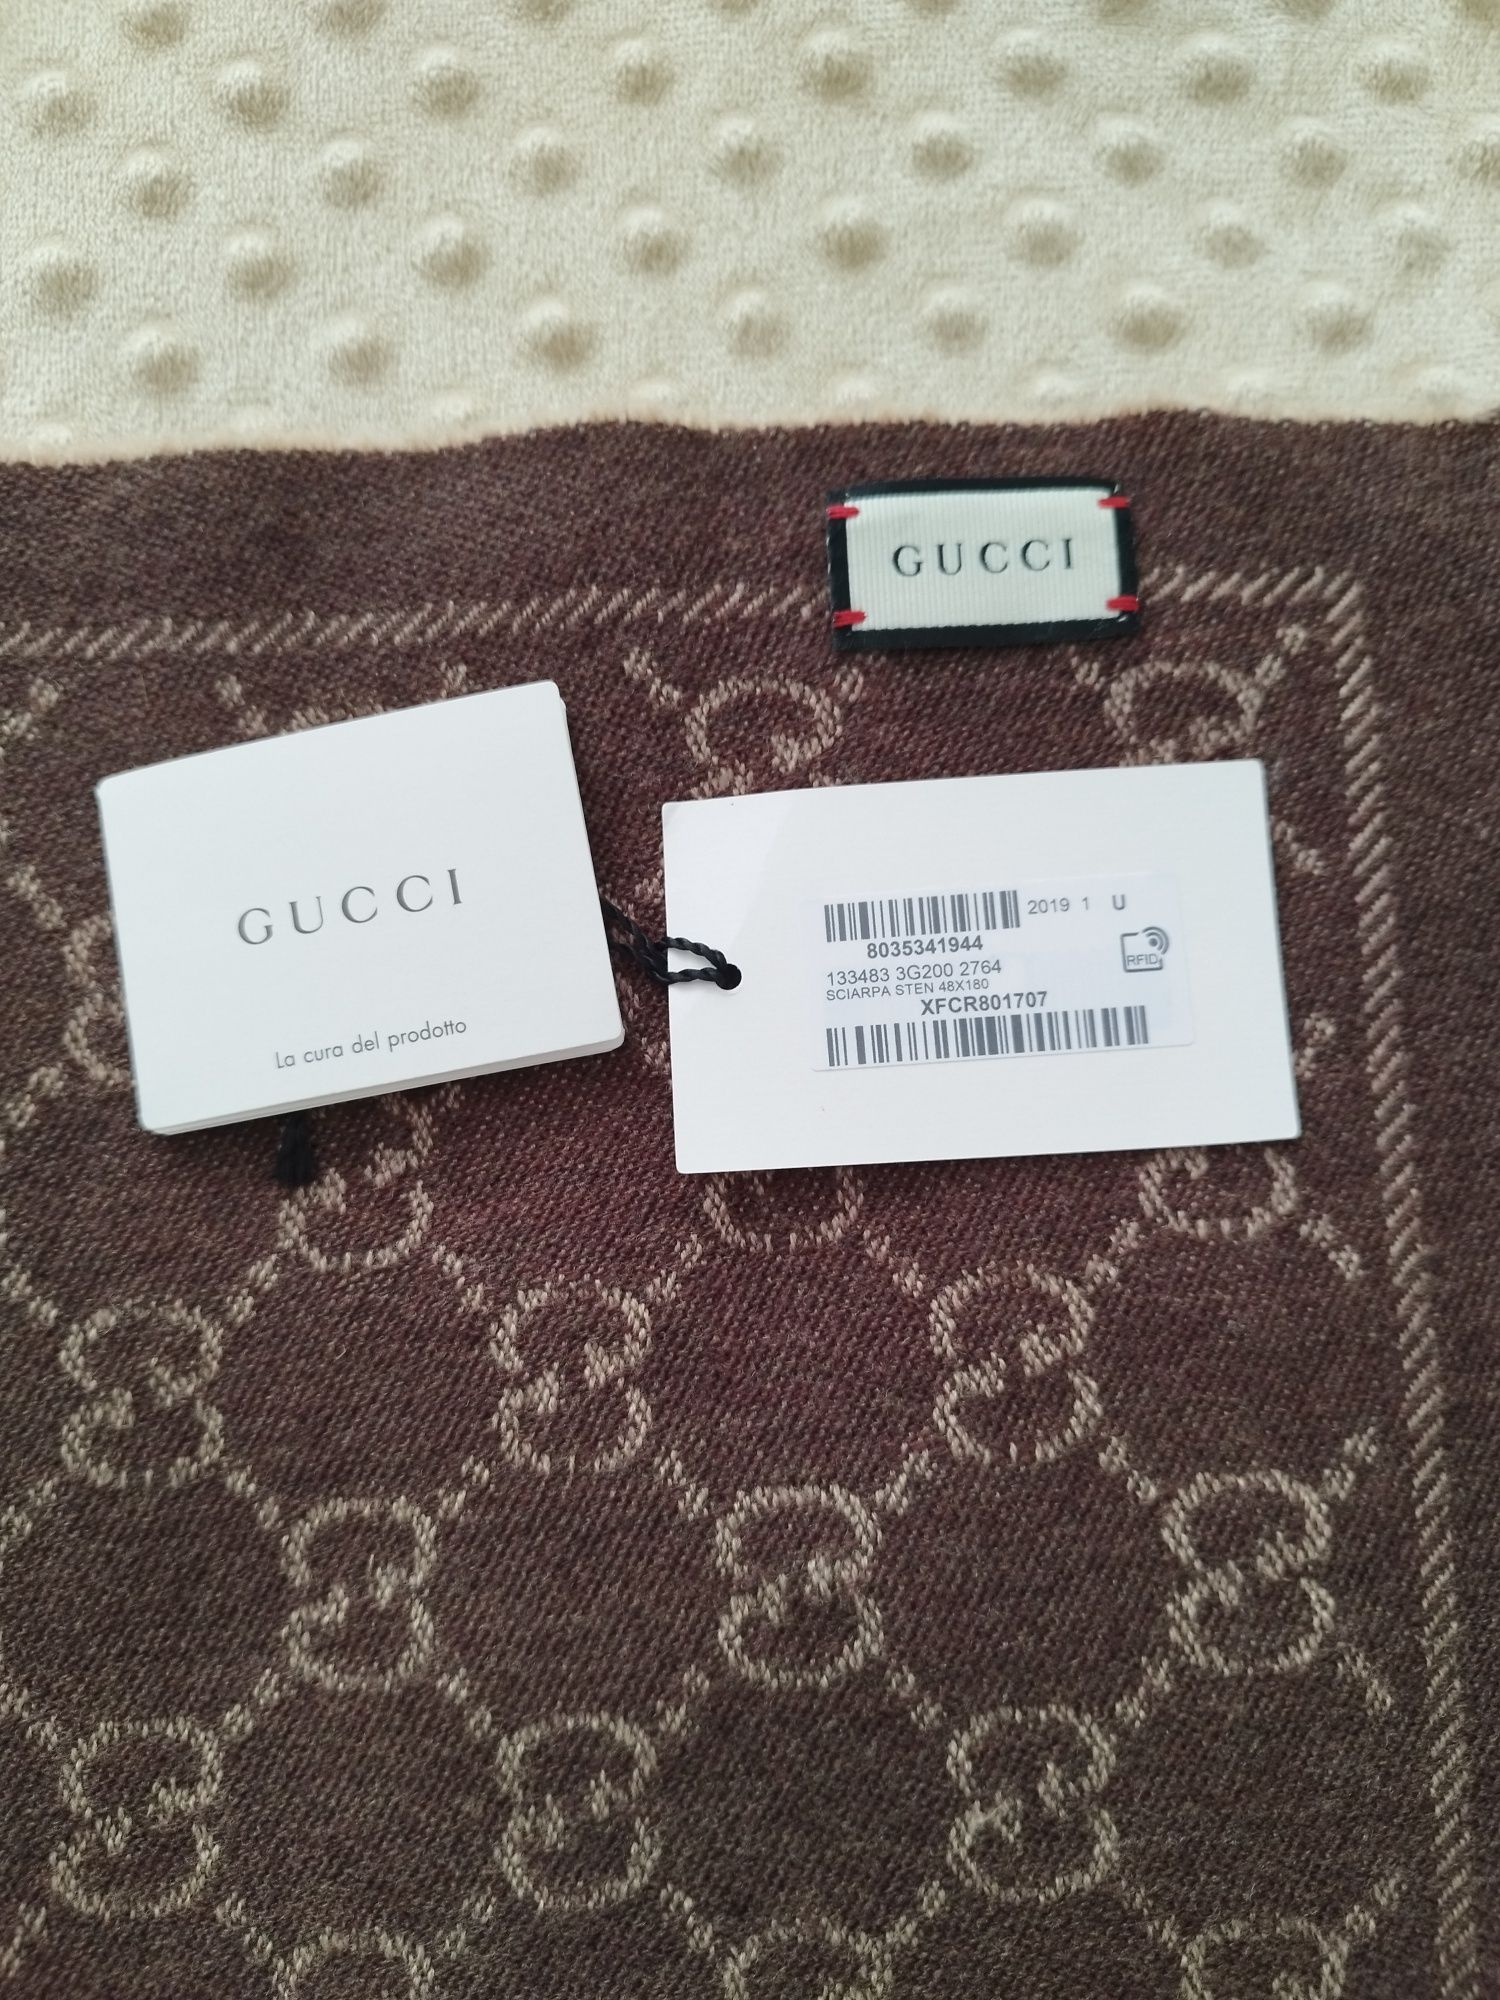 Cachecol Gucci original